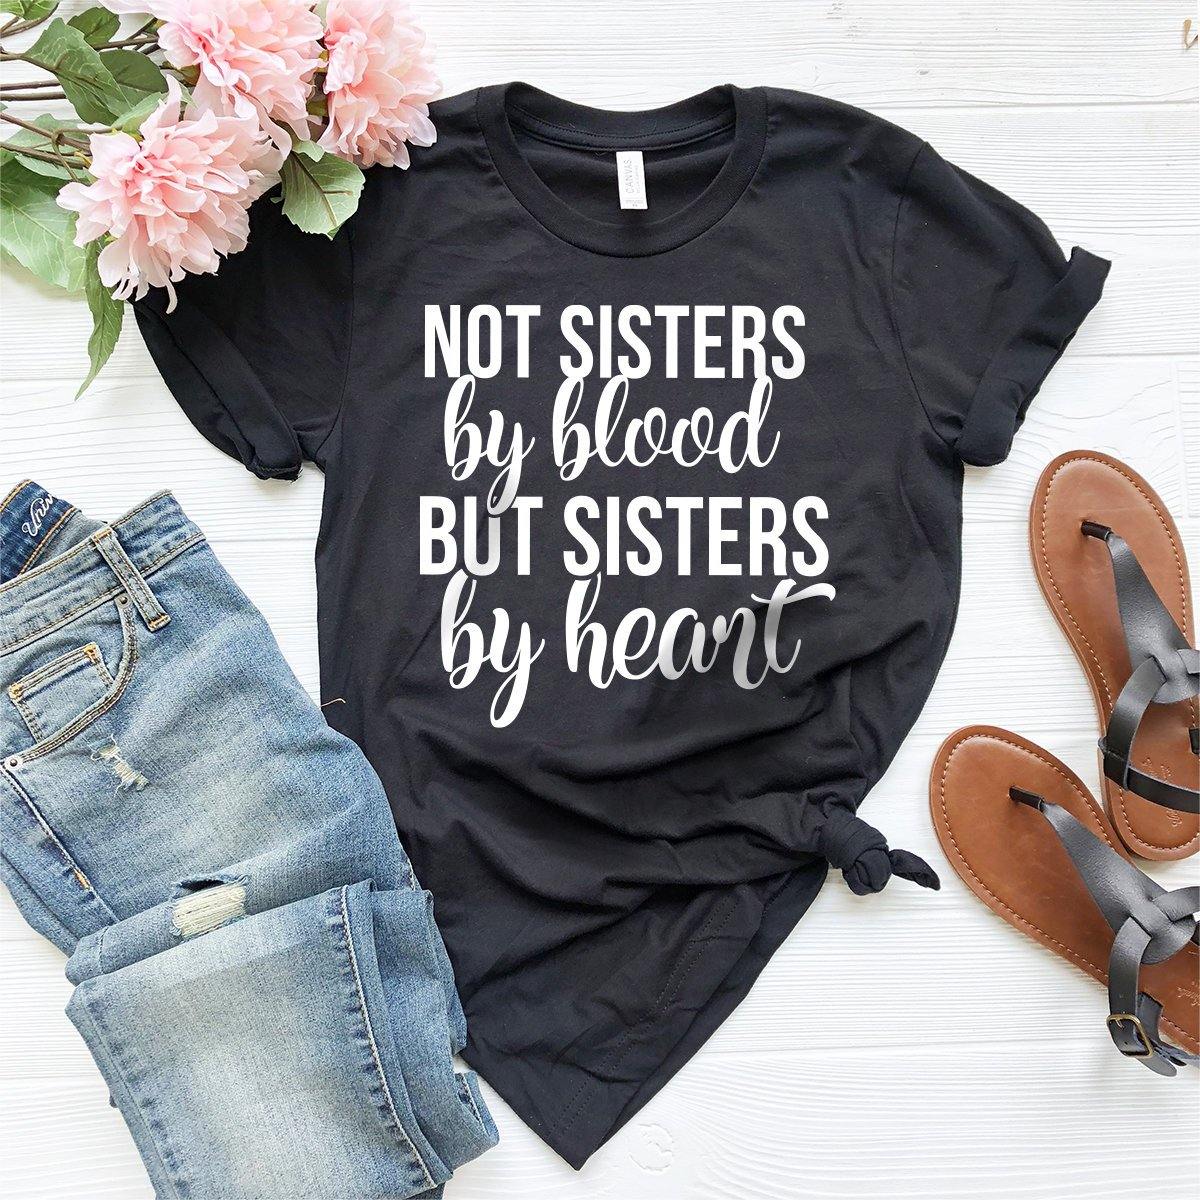 Besties Shirt, Bestie Sister T-Shirt, Bff Shirt, Not Sisters By Blood Sisters By Heart Shirt, Best Friend Shirt, Unbiological Sister Shirt - Fastdeliverytees.com